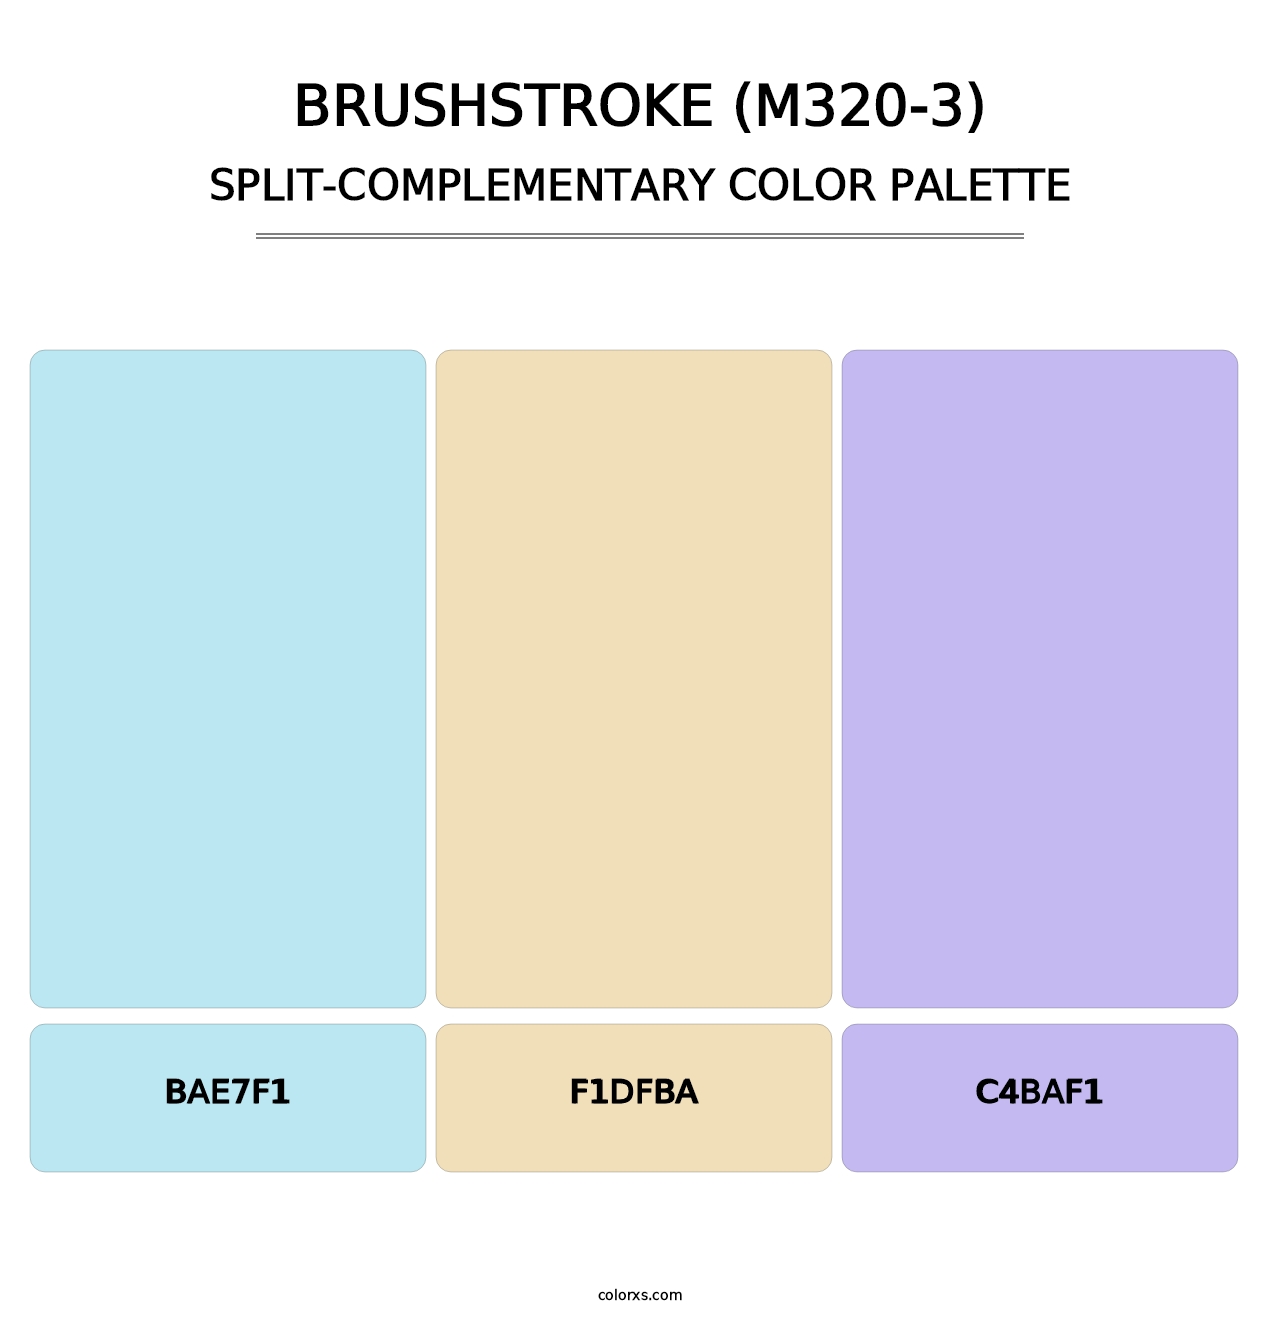 Brushstroke (M320-3) - Split-Complementary Color Palette